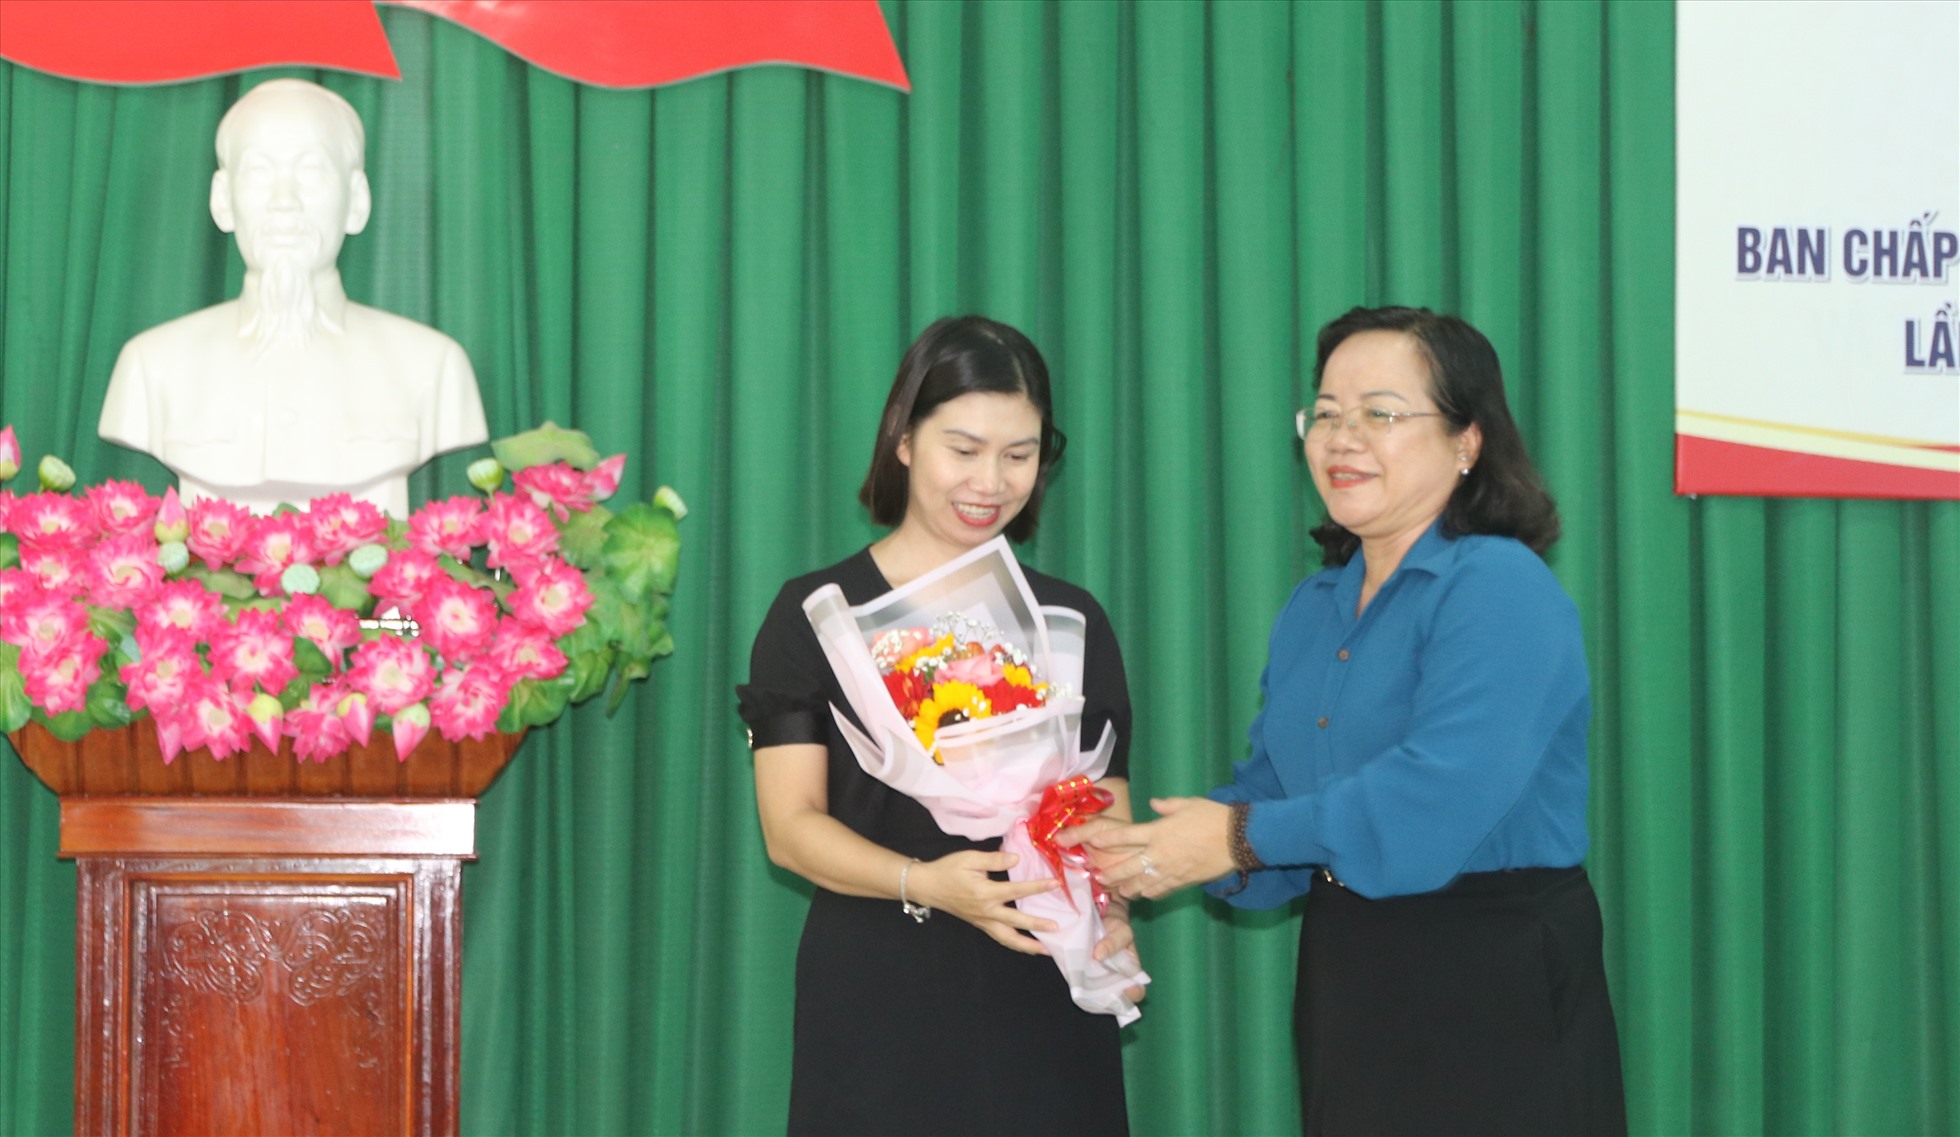 Lãnh đạo Thành ủy Cam Ranh chúc mừng bà Lâm Thị Phương Nga được bầu làm chủ tịch LĐLĐ TP. Cam Ranh.